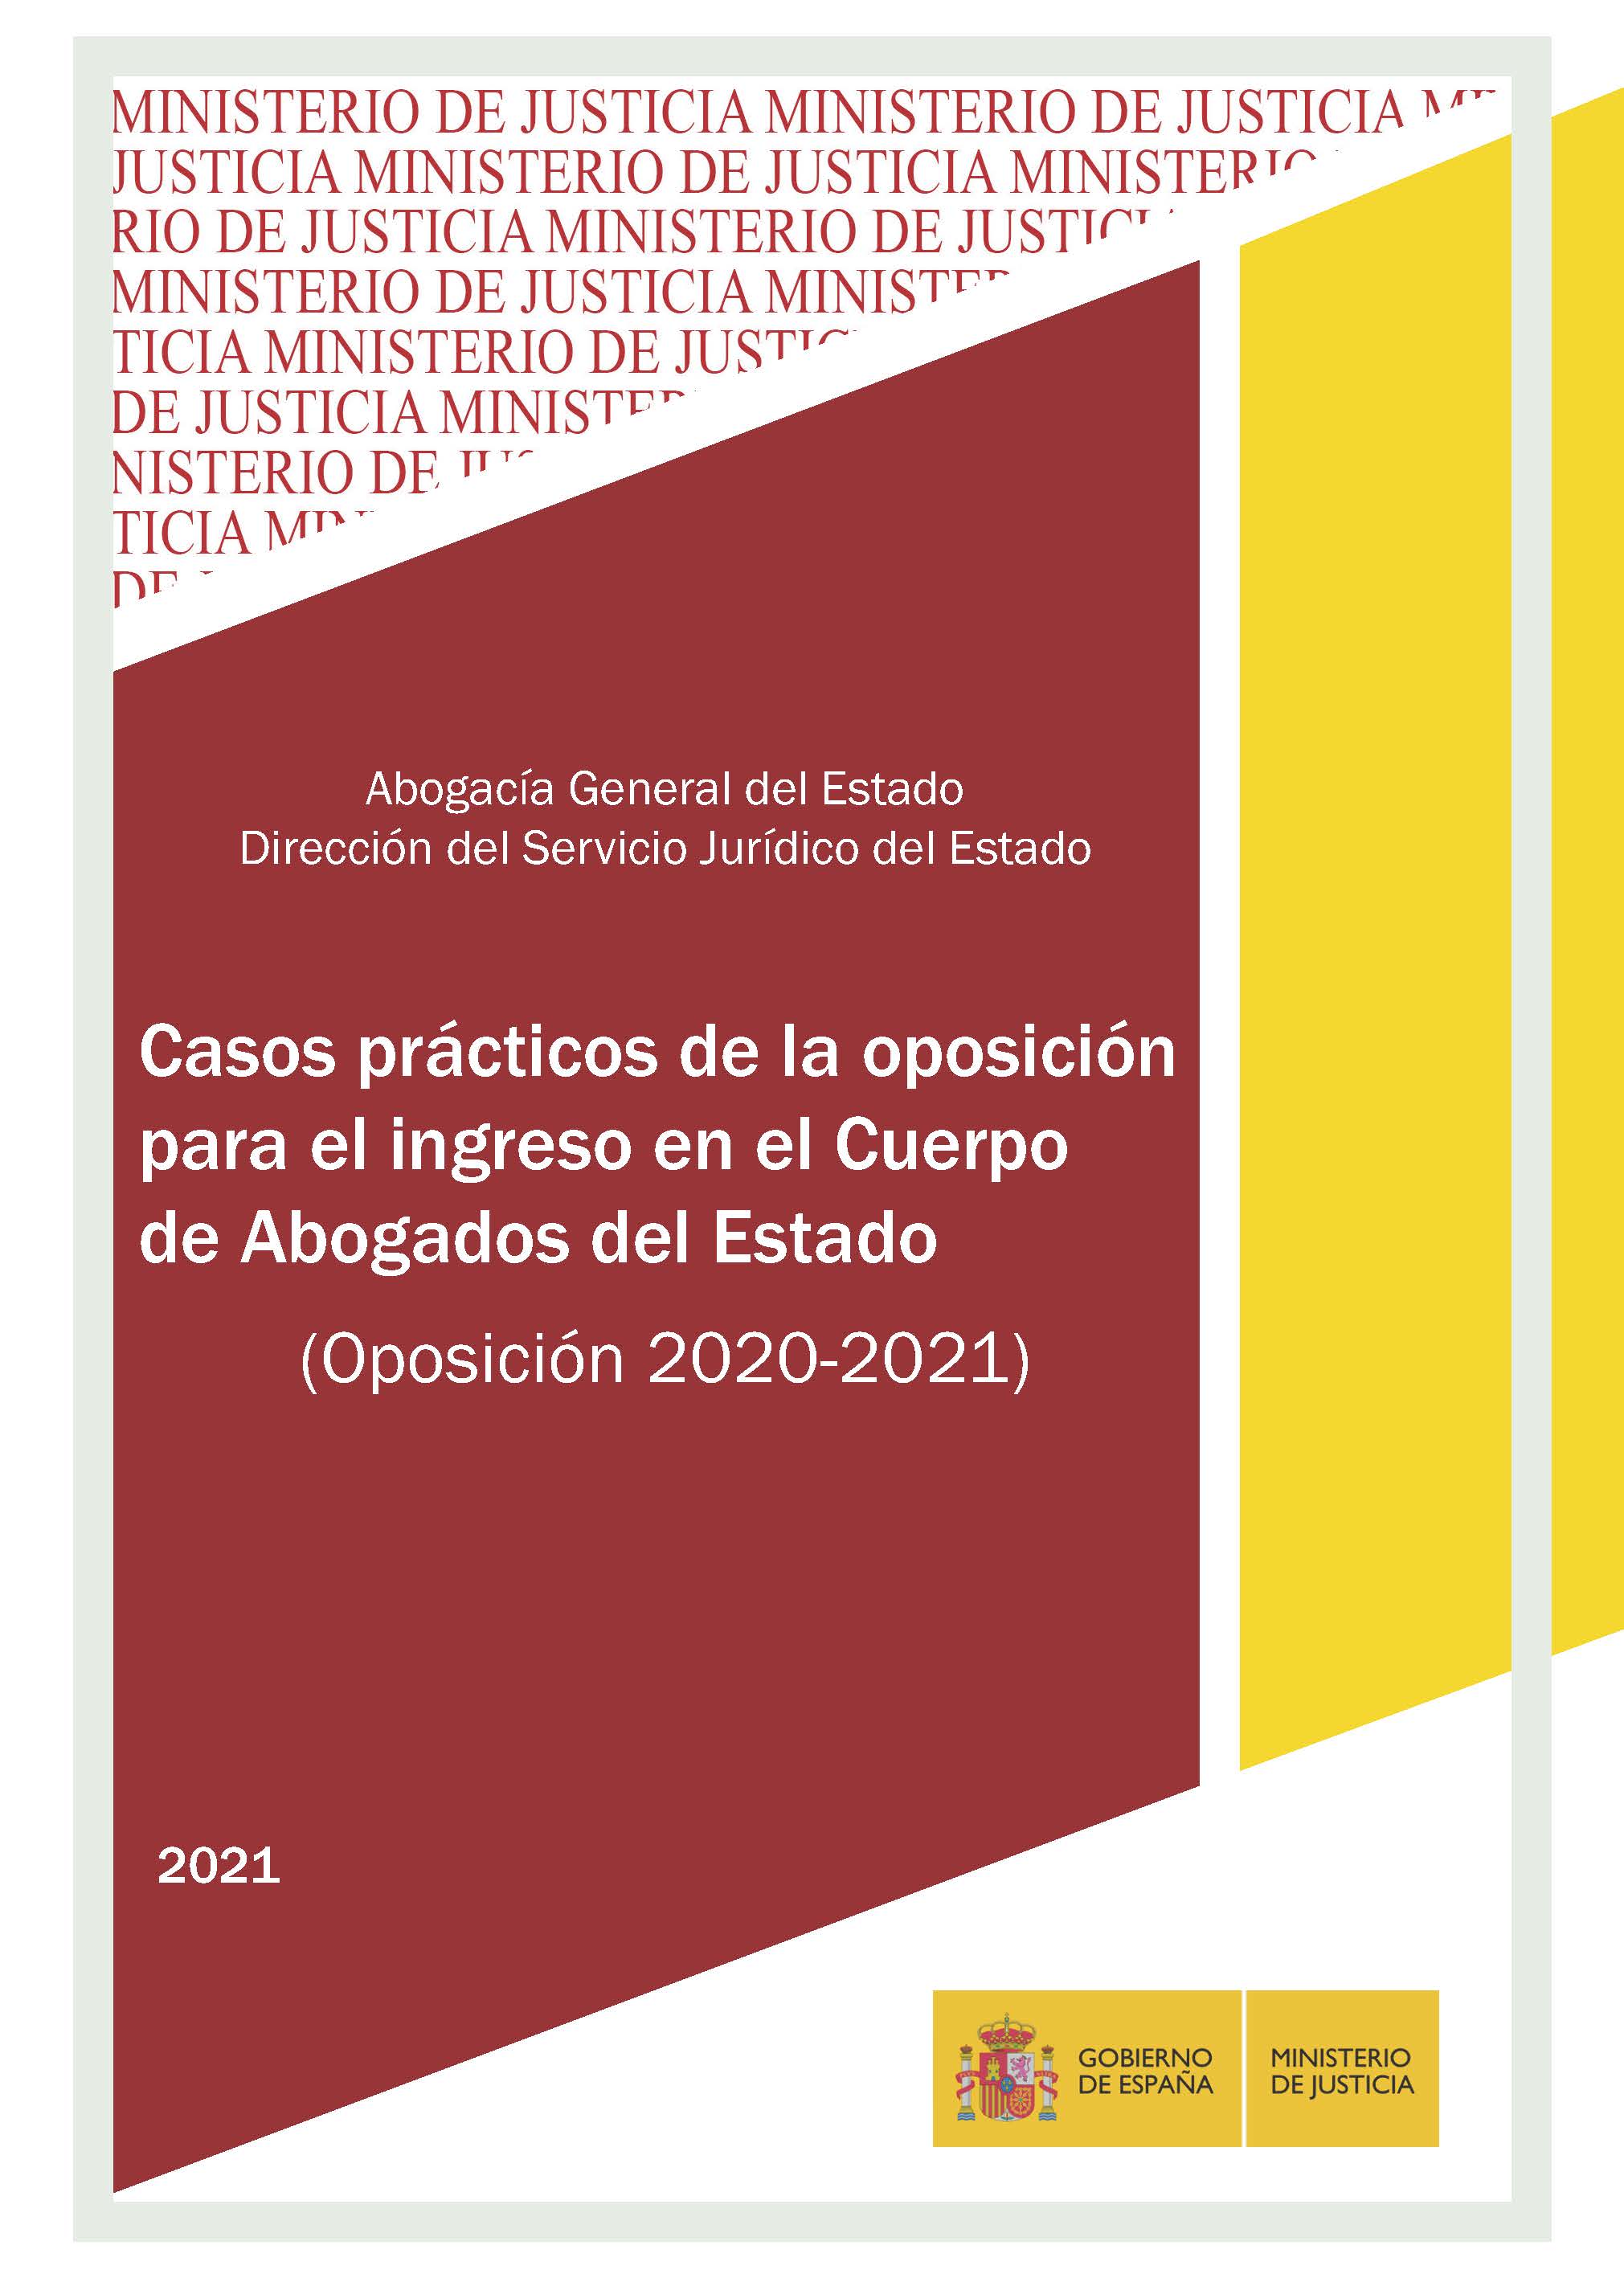 View details of CASOS PRÁCTICOS DE LA OPOSICIÓN PARA EL INGRESO EN EL CUERPO DE ABOGADOS DEL ESTADO 2020-2021